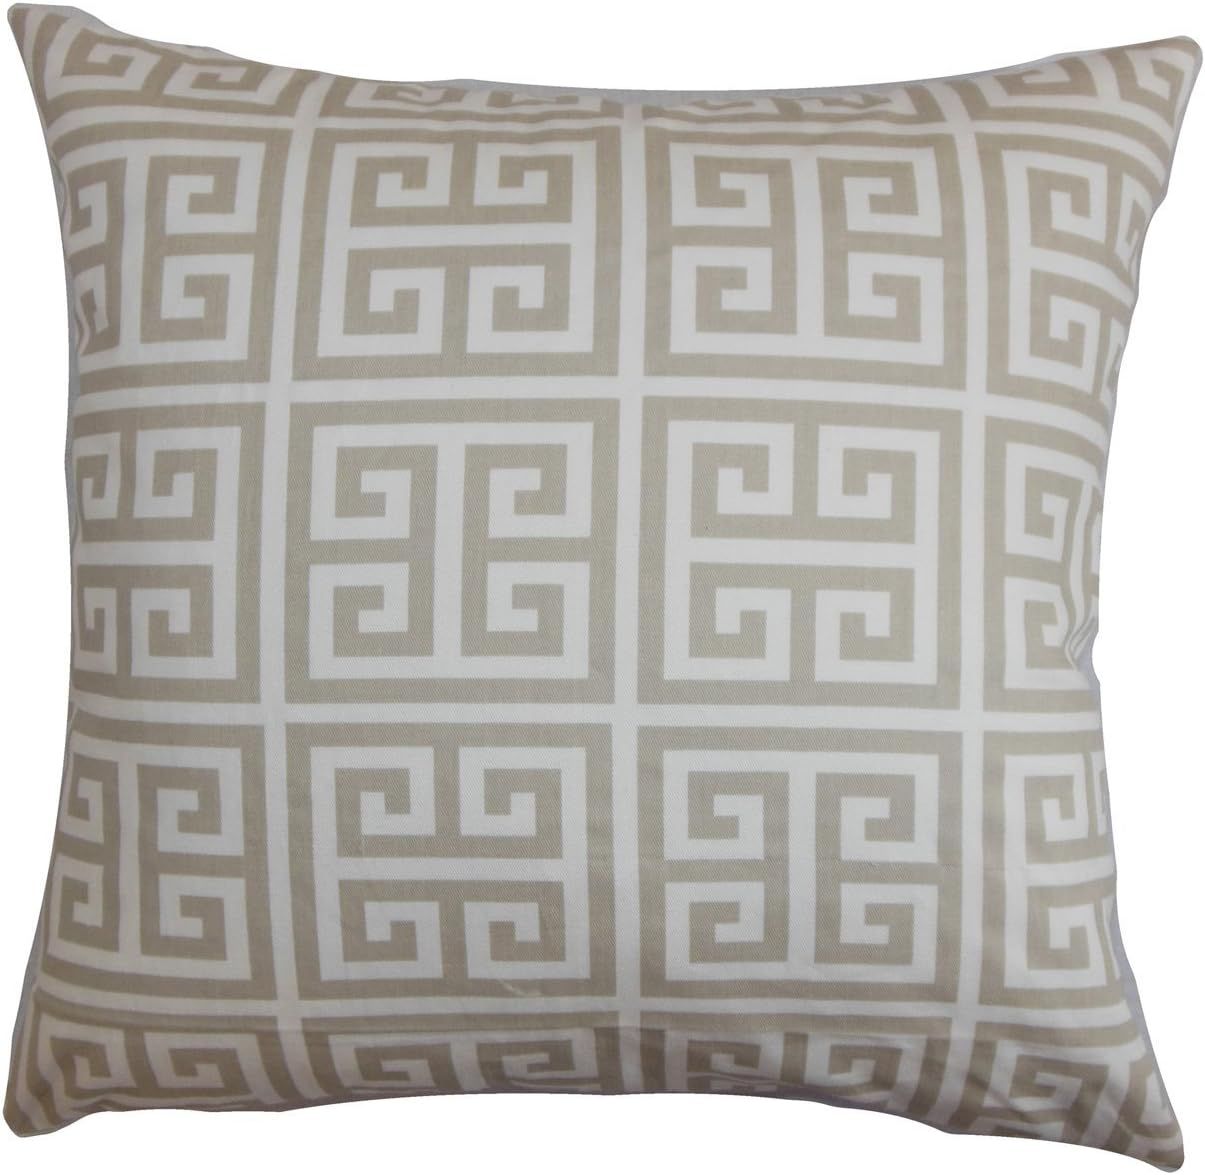 The Pillow Collection Paros Greek Key Bedding Sham Gray White, Queen/20" x 30" | Amazon (US)